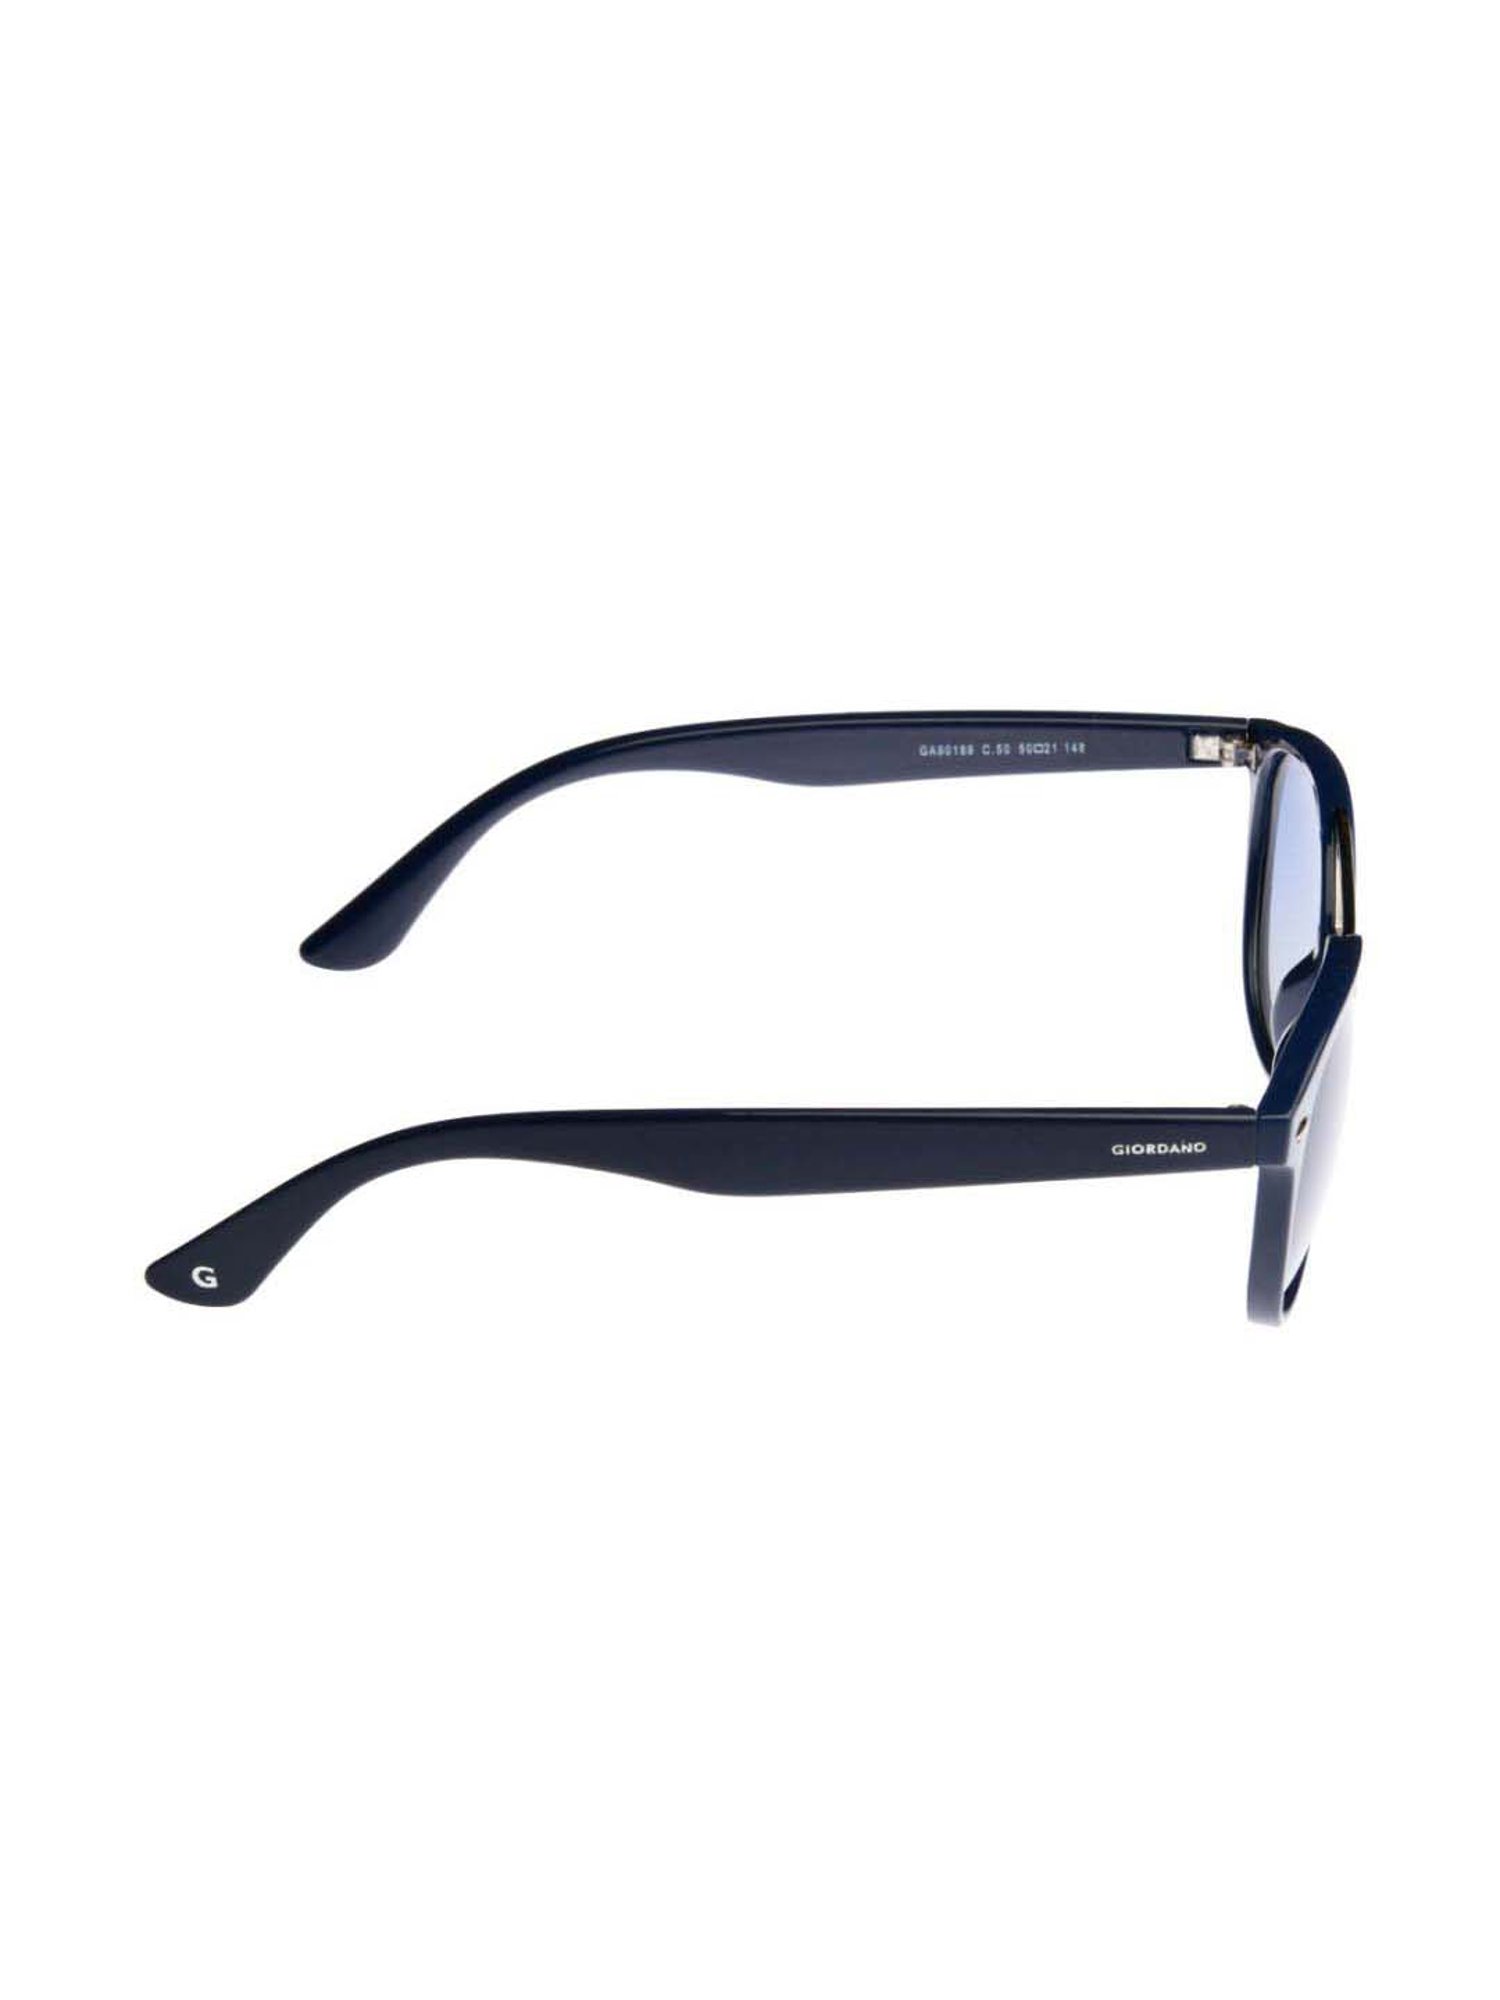 Buy Giordano Polarized Sunglasses Uv Protected Use for Men - Ga90312C01  (66) Online